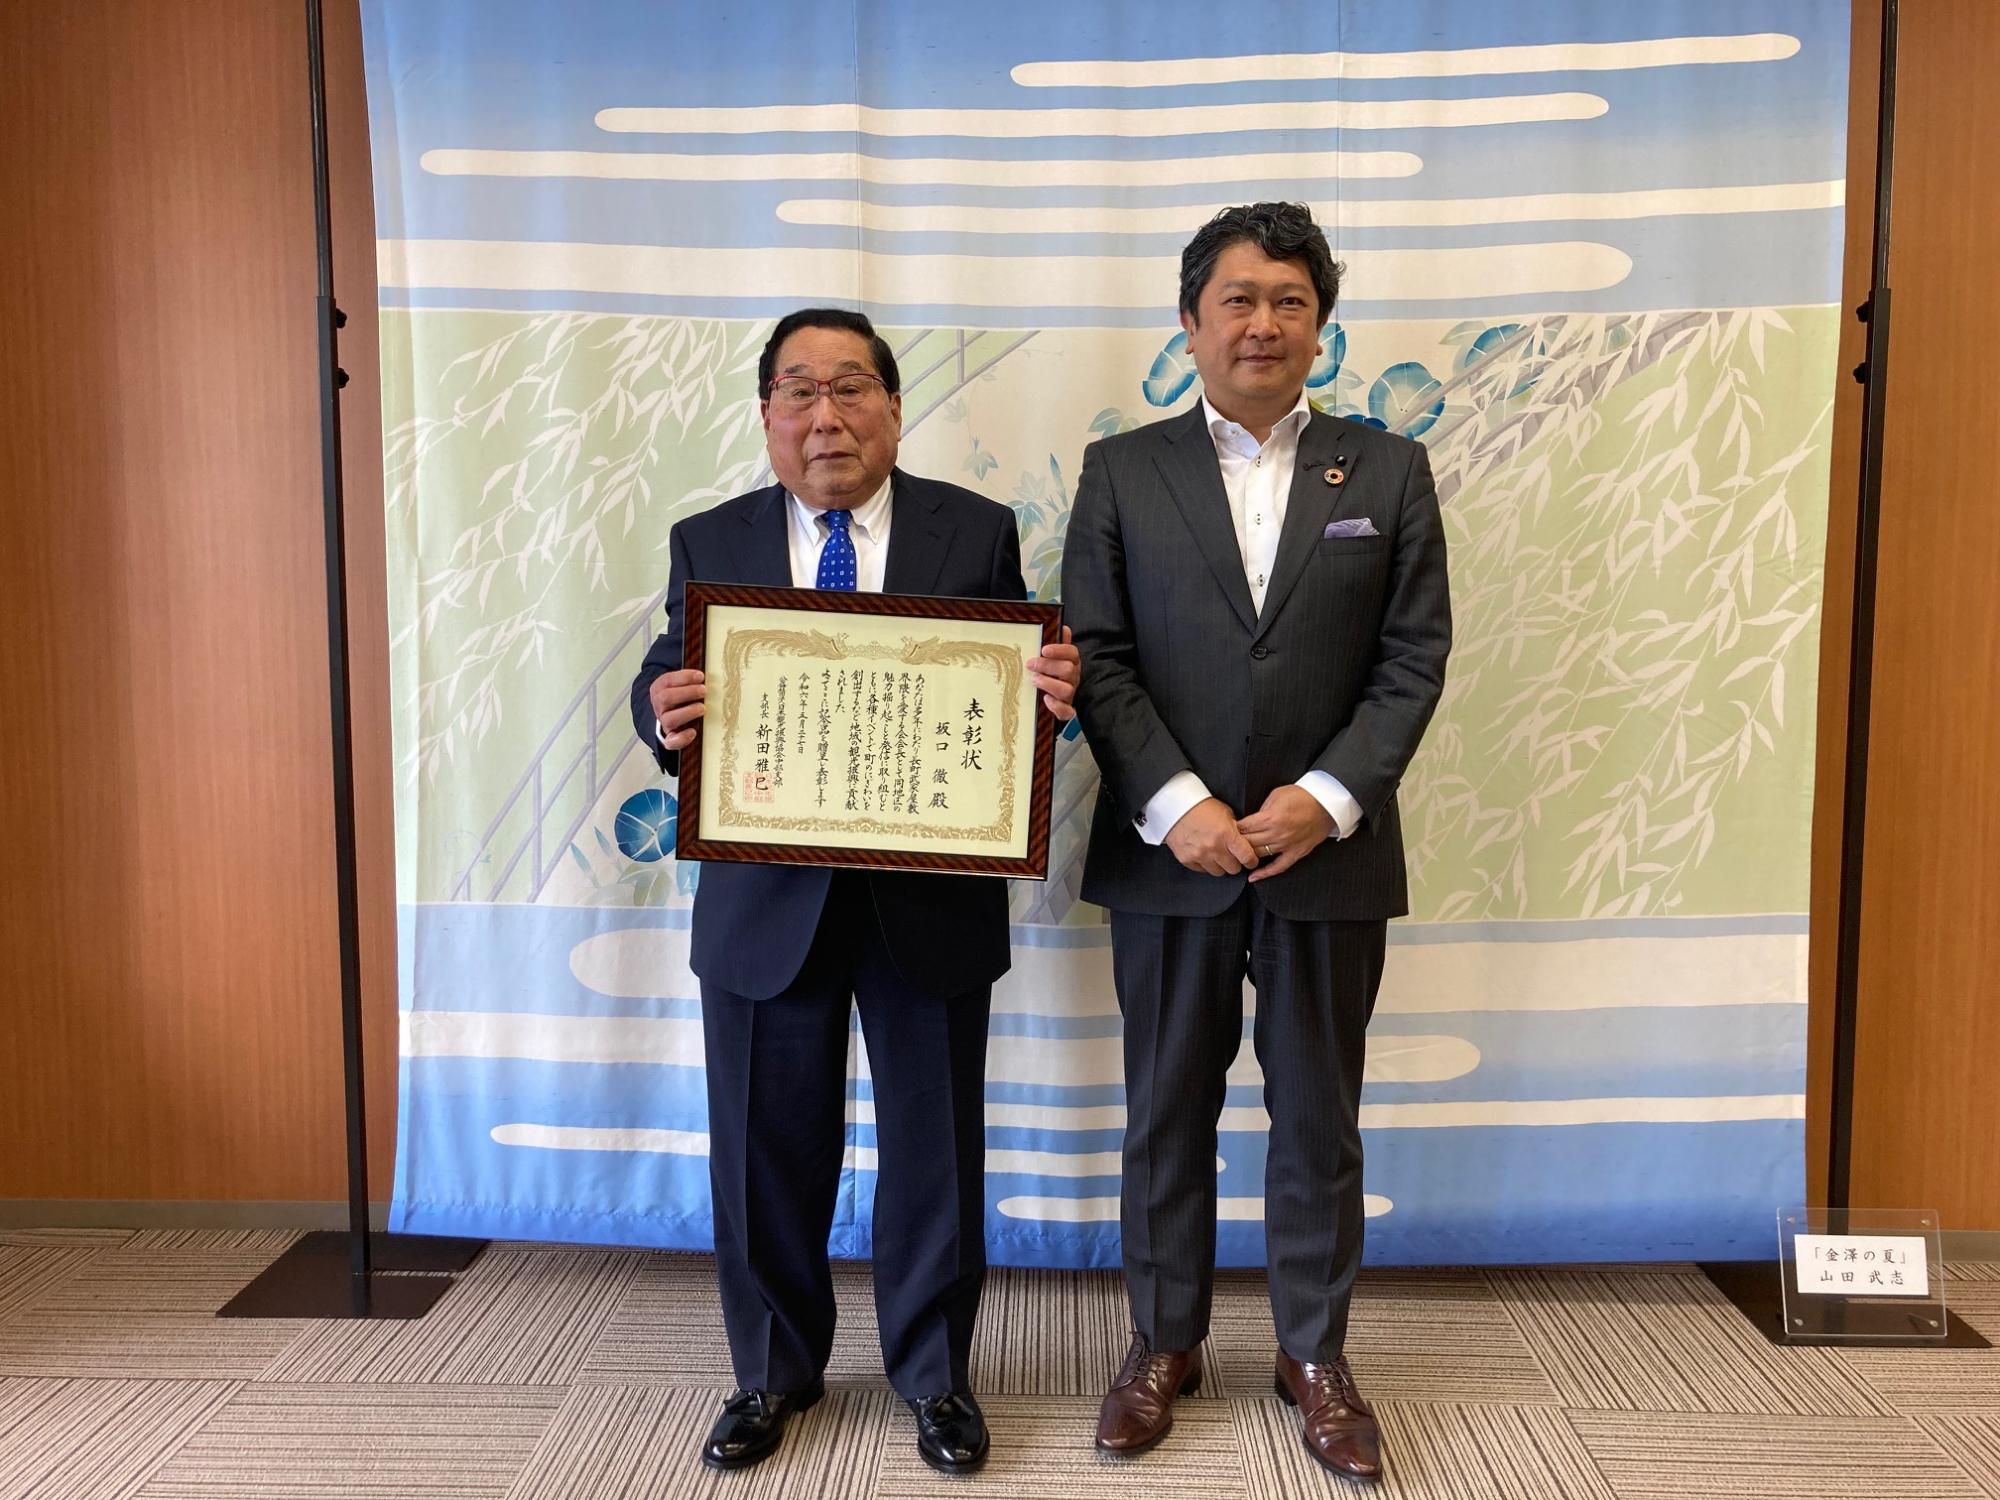 日本観光振興協会観光事業功労者中部支部長表彰の伝達式